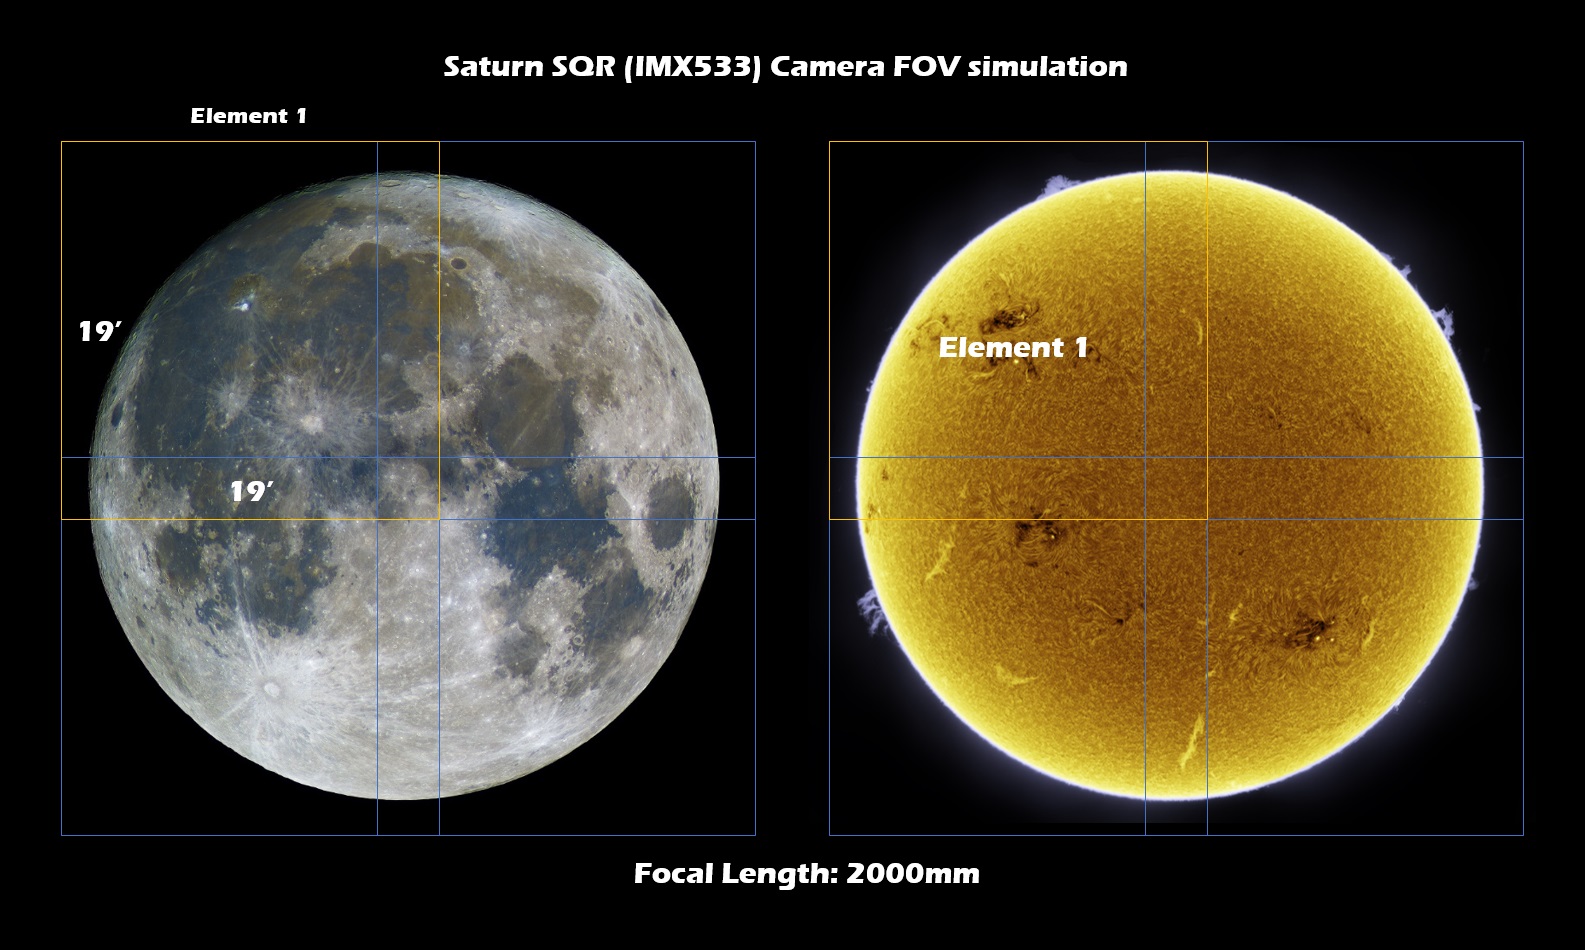 Saturn-SQR-simulation-FL2000mm.jpg (1585×950)